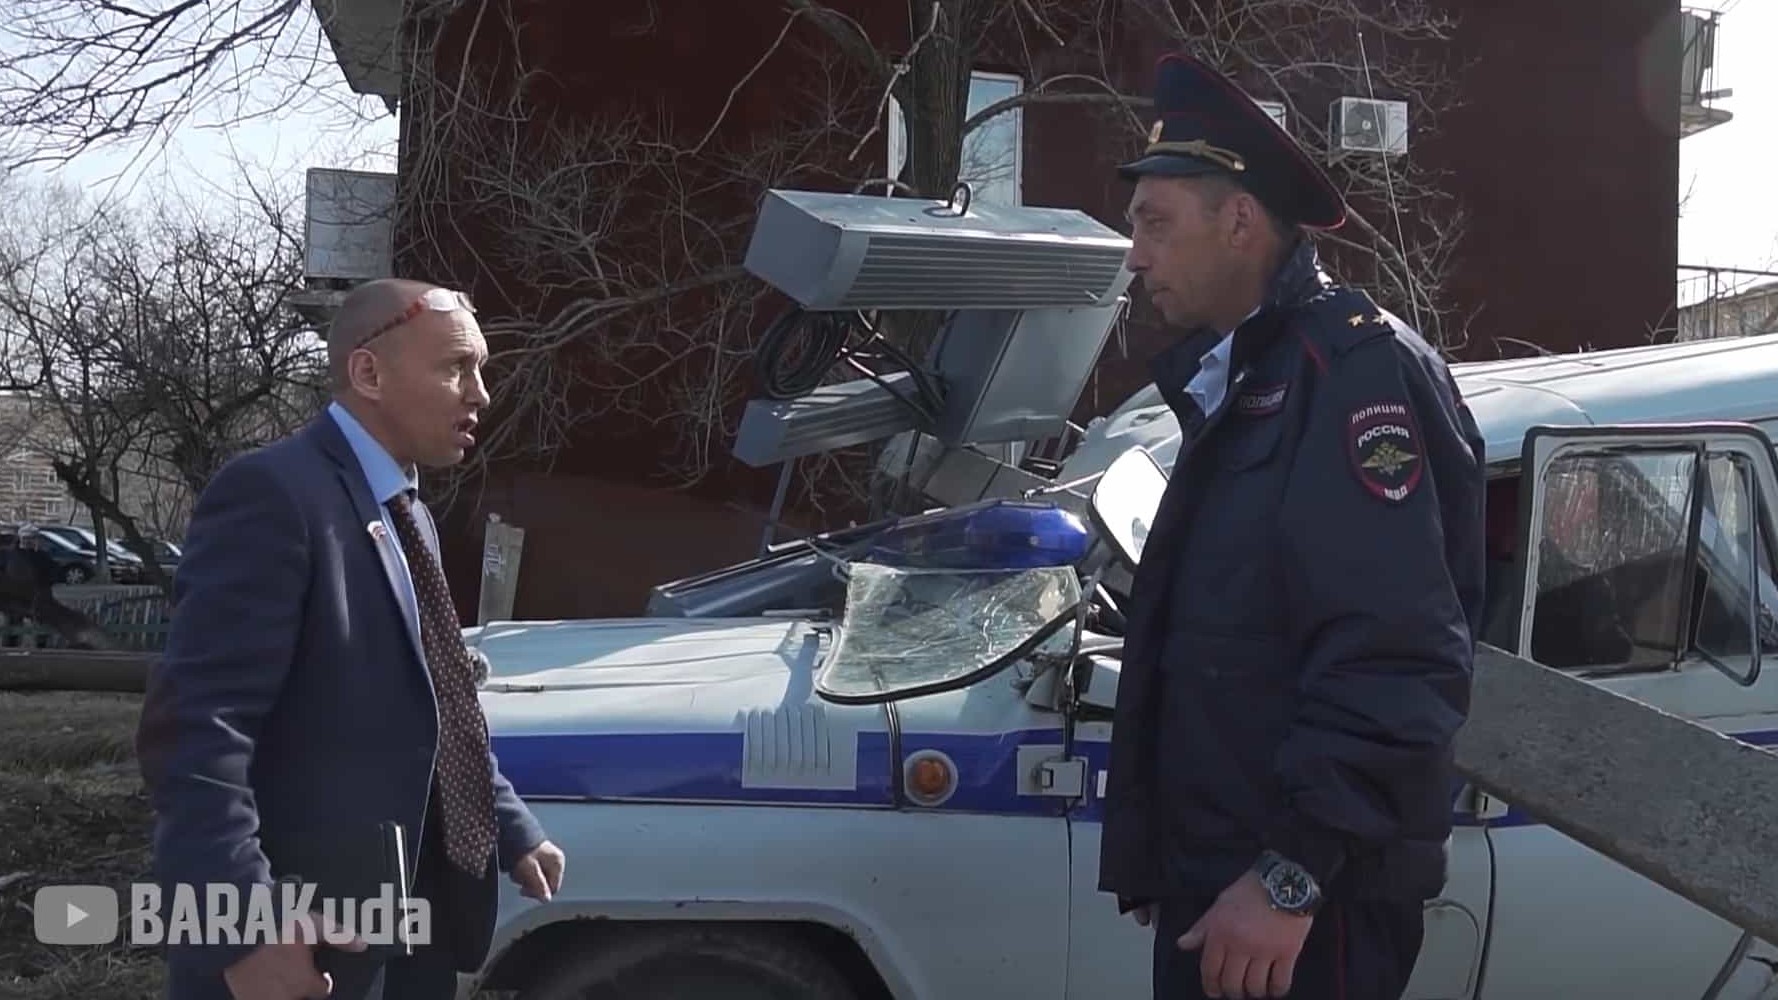 俄罗斯纪录短片《俄罗斯警察硬核执法》第1-2季 全58集 俄语中字 1080P高清网盘下载 